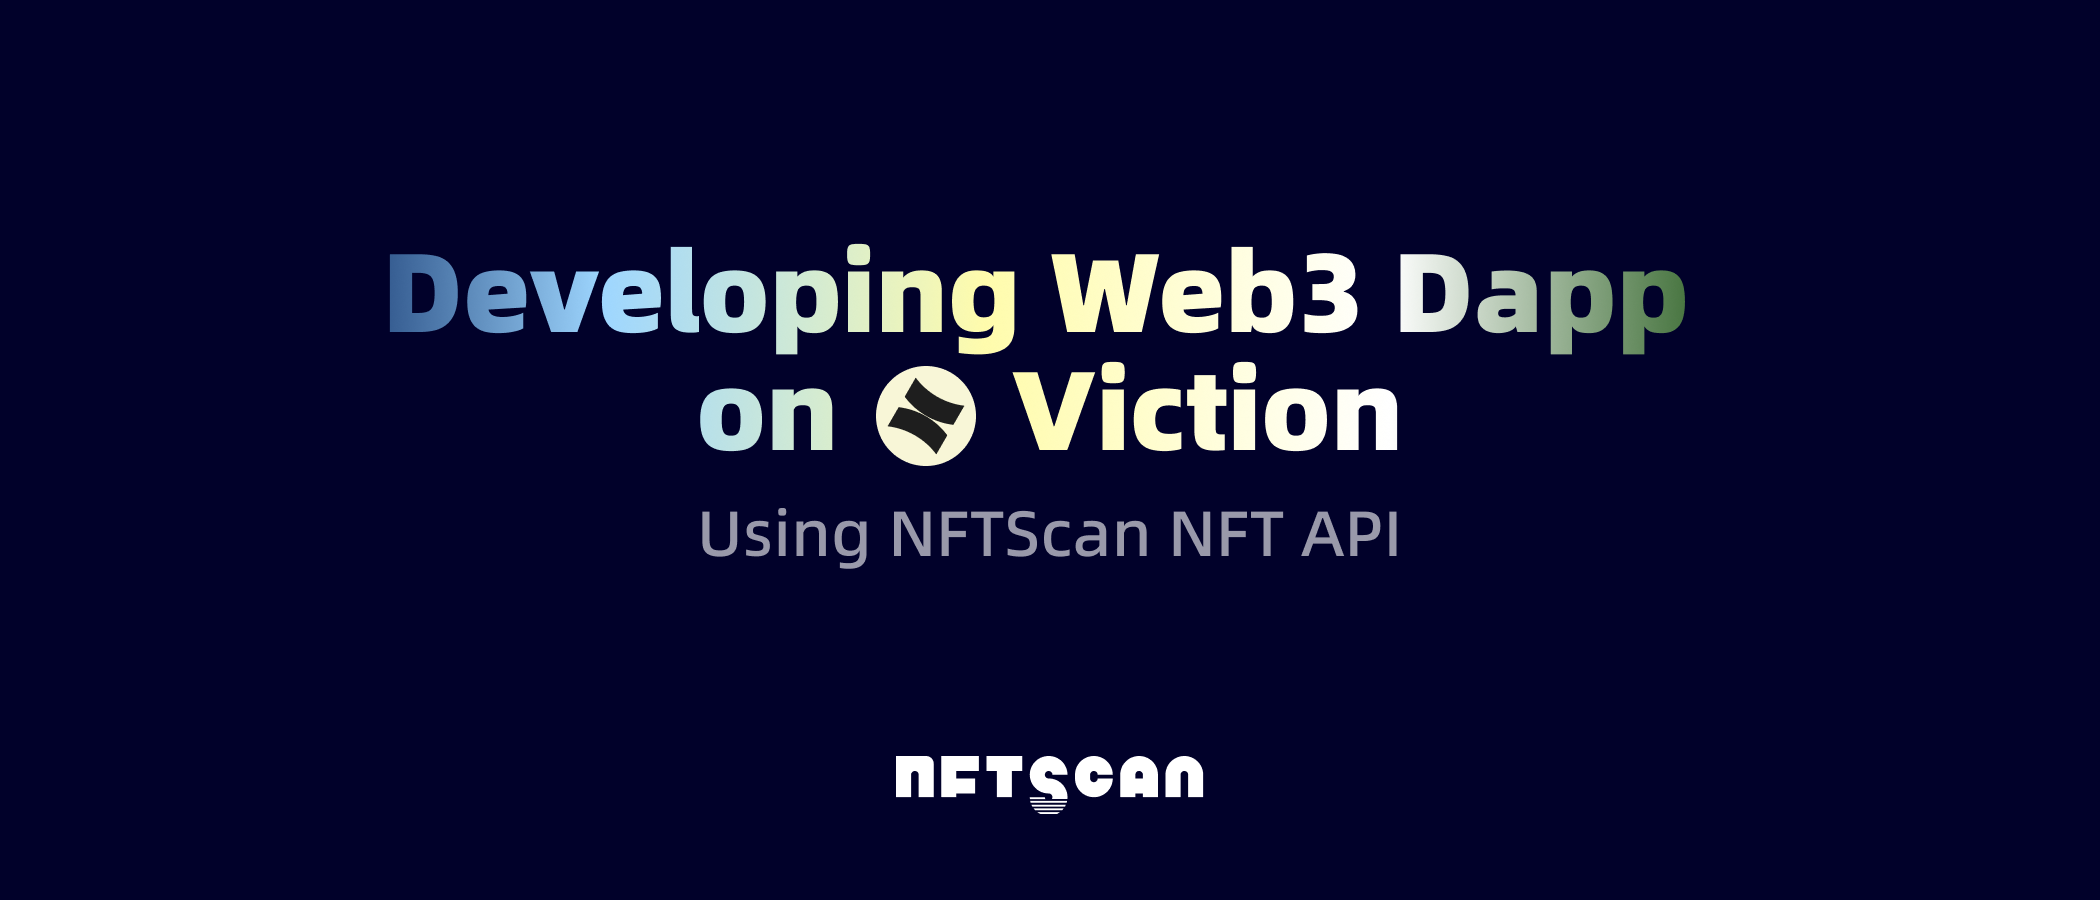 如何使用 NFTScan NFT API 在 Viction 网络上开发 Web3 应用